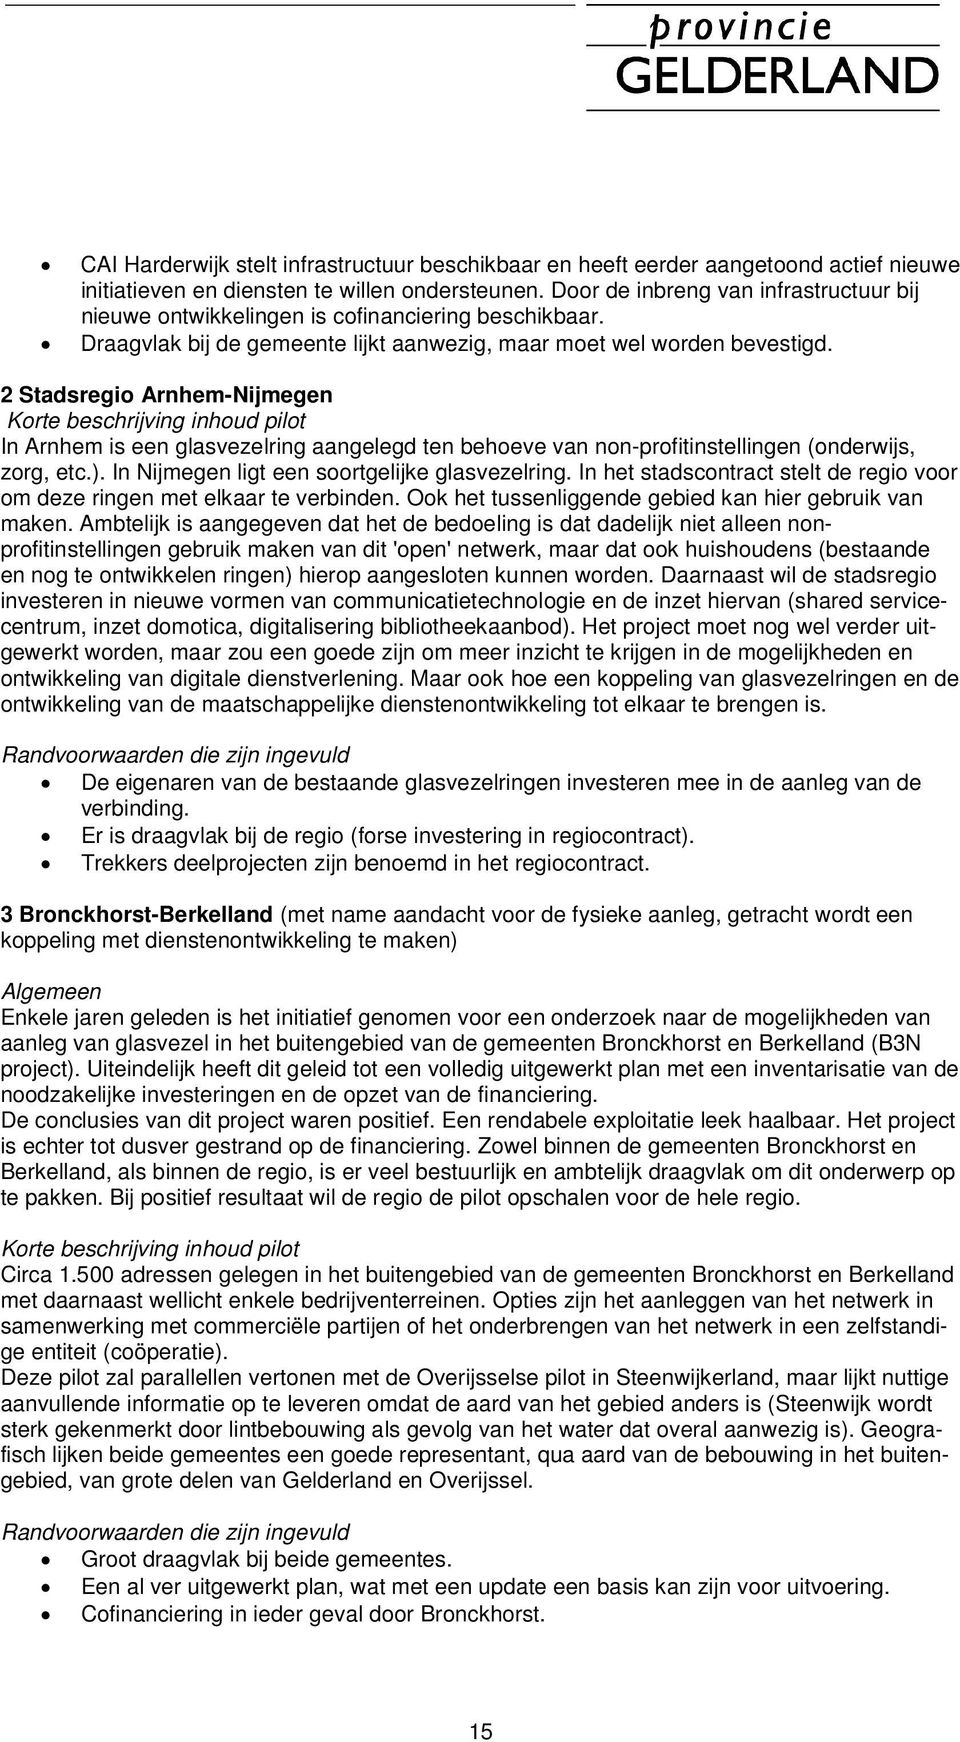 2 Stadsregio Arnhem-Nijmegen Korte beschrijving inhoud pilot In Arnhem is een glasvezelring aangelegd ten behoeve van non-profitinstellingen (onderwijs, zorg, etc.).